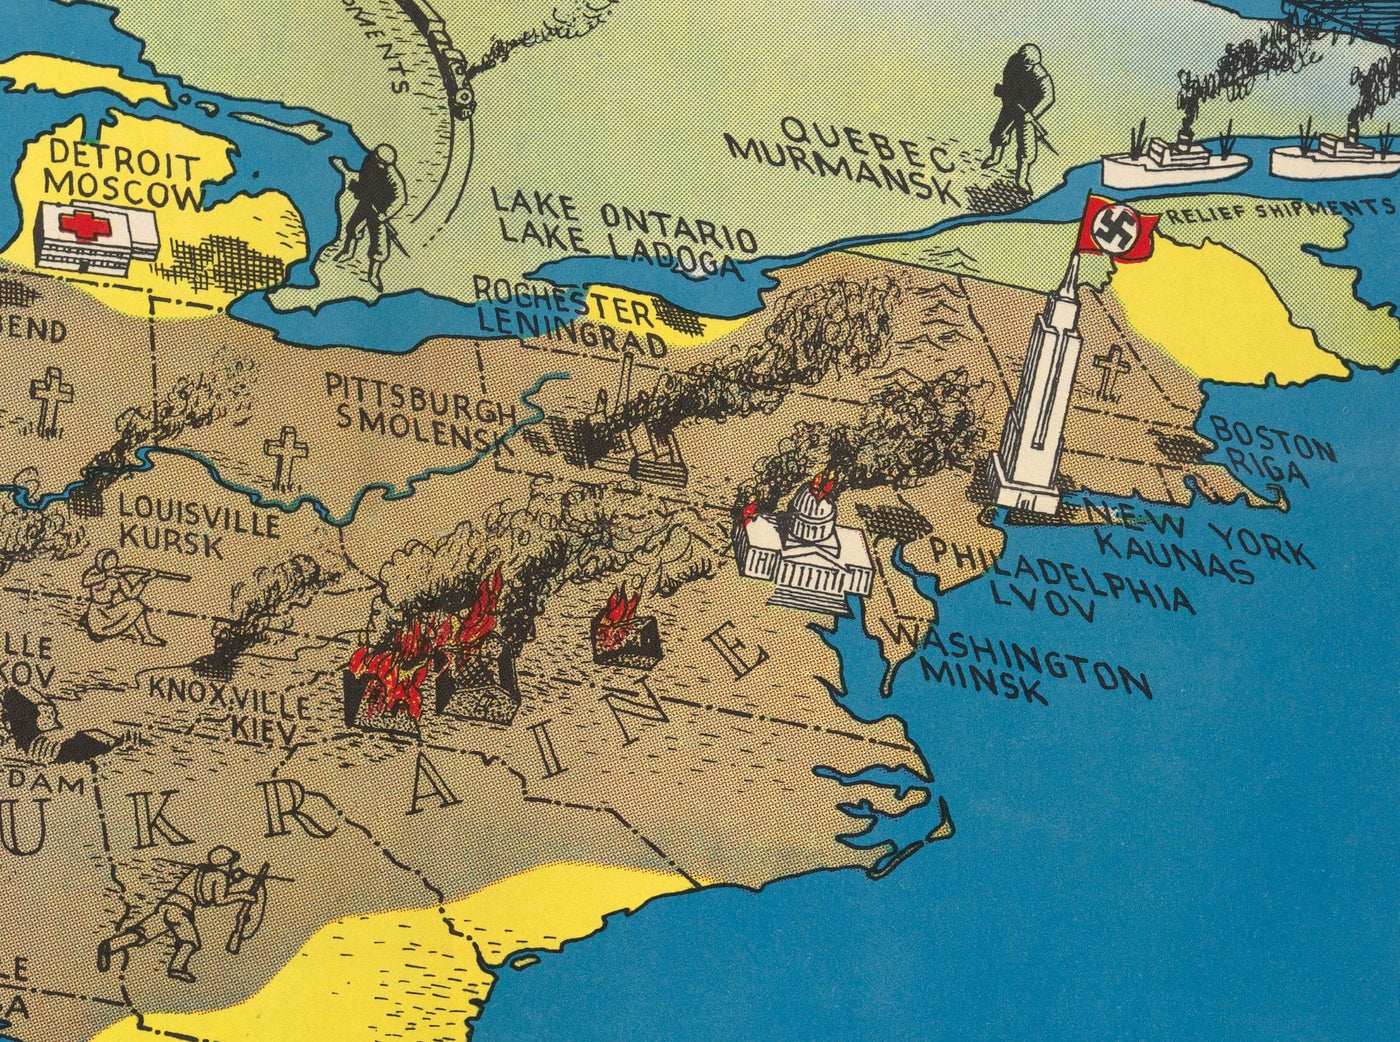 Antiguo mapa de Rusia y EE.UU., 1943 - Segunda Guerra Mundial Invasión nazi de la Unión Soviética, Ucrania - 38.000.000 escaparon, 10.000.000 murieron